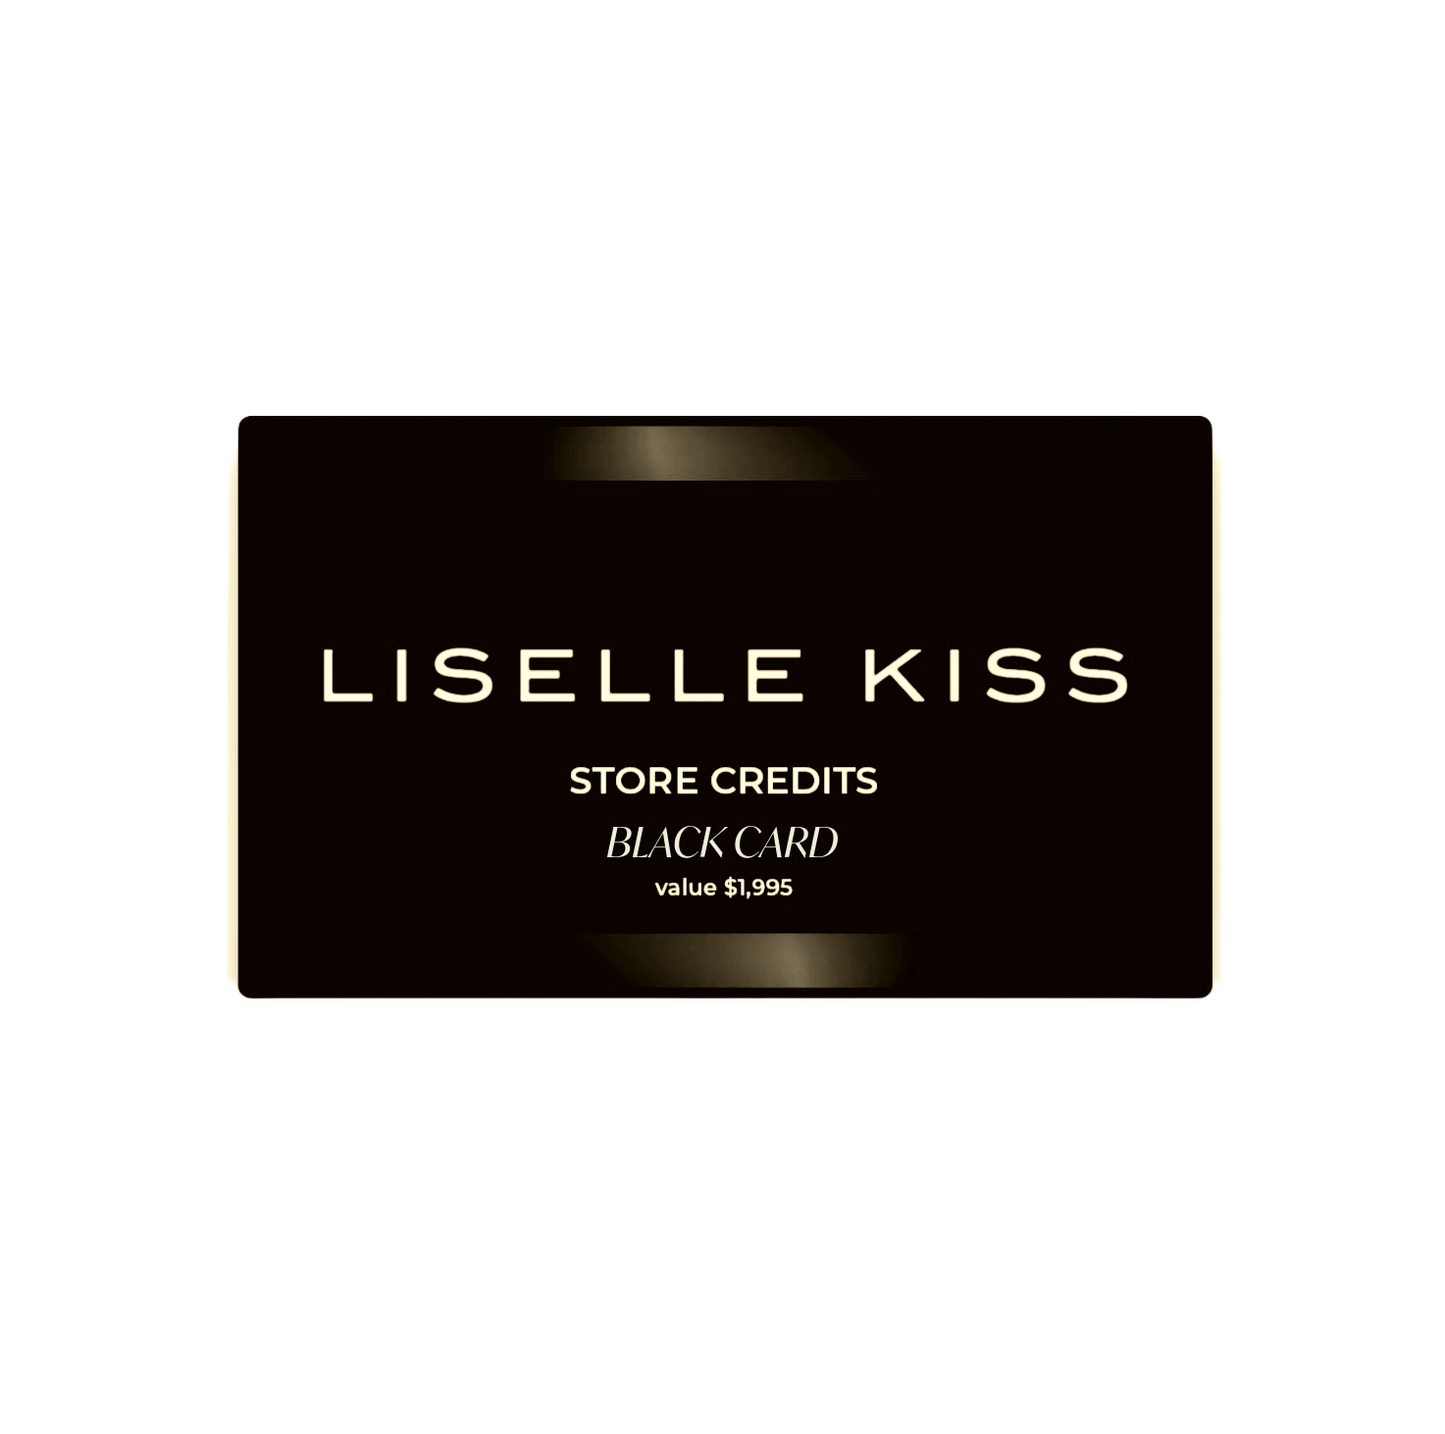 LISELLE KISS CLUB PATRON'S CARD